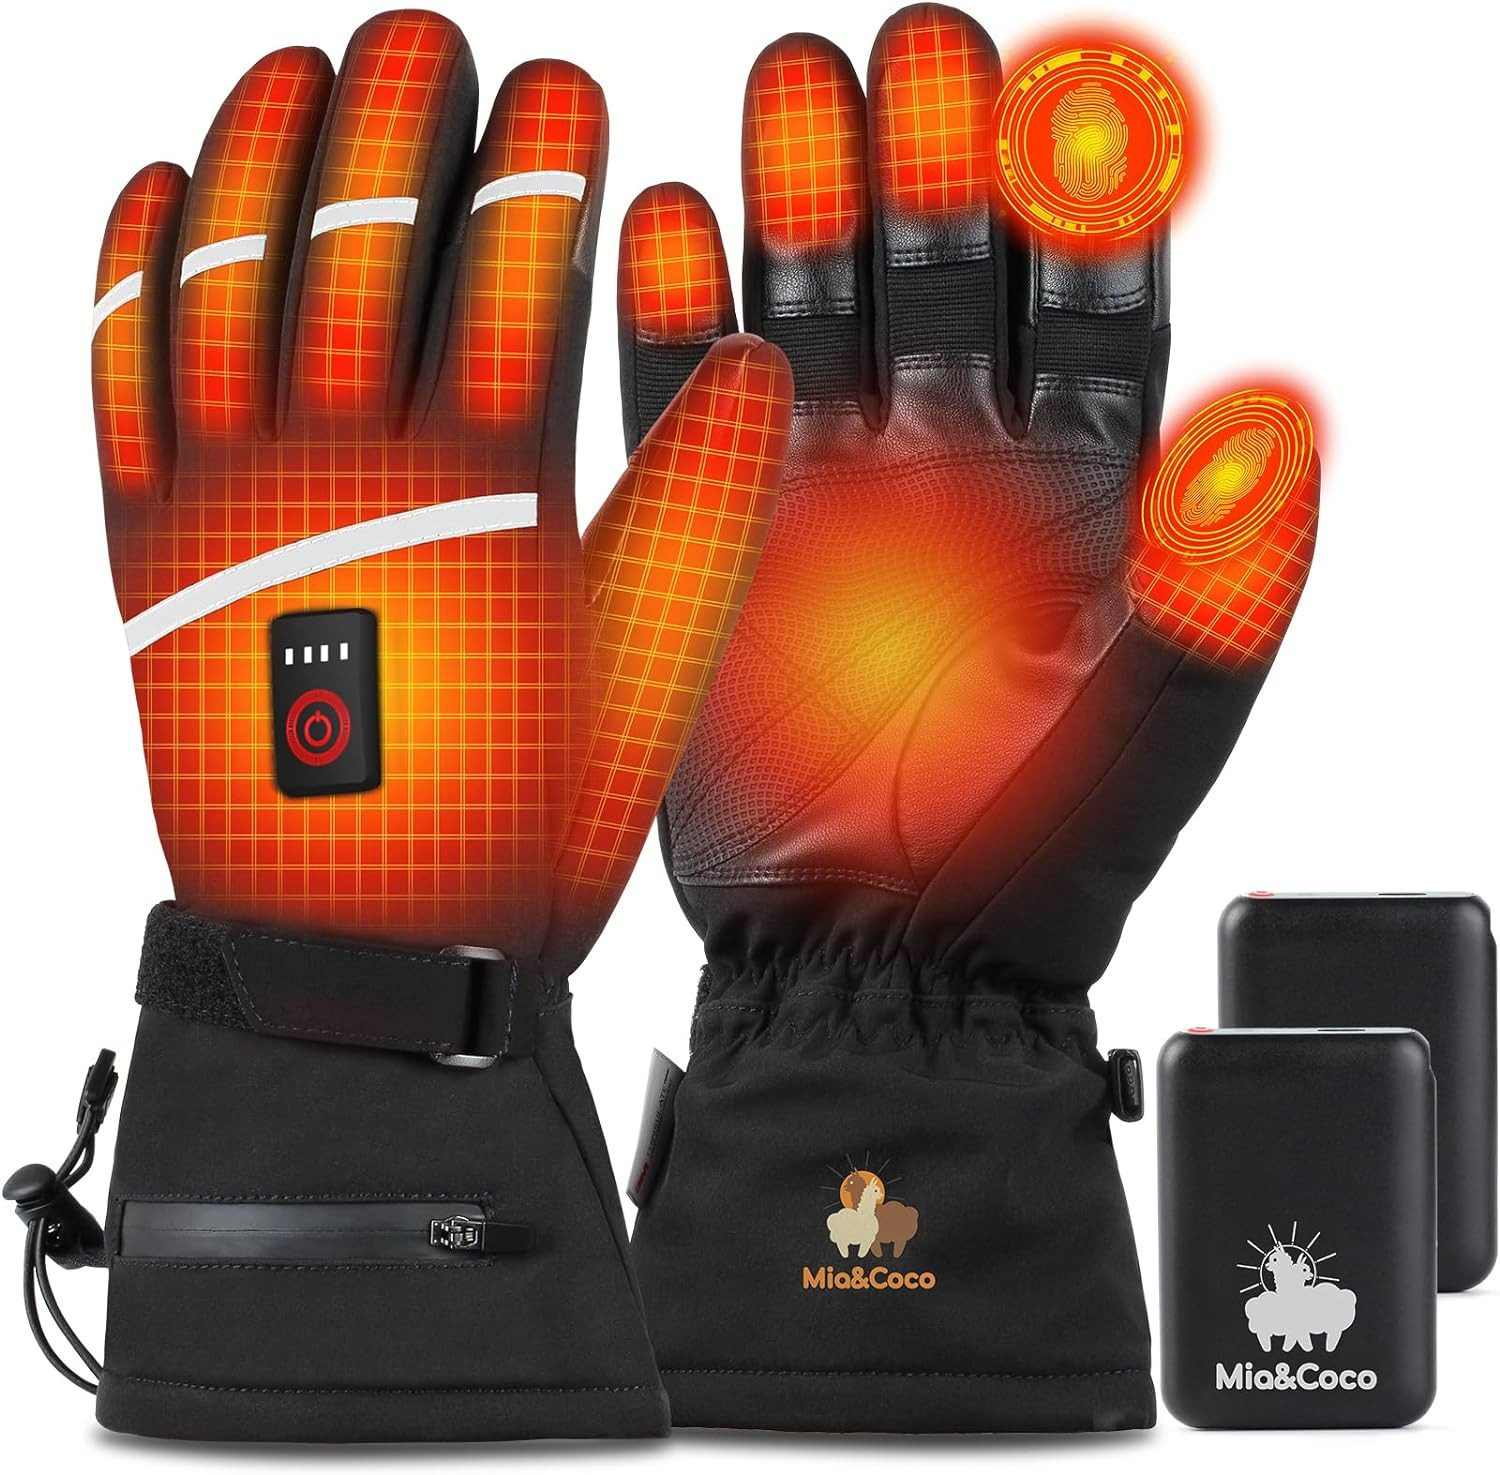 Mia&Coco Skihandschuhe Beheizbare Handschuhe für Herren Damen, 3 Stufige Ski Handschuhe (Set) Heizung, Intelligente Temperaturregelung, Atmungsaktiv und rutschfest